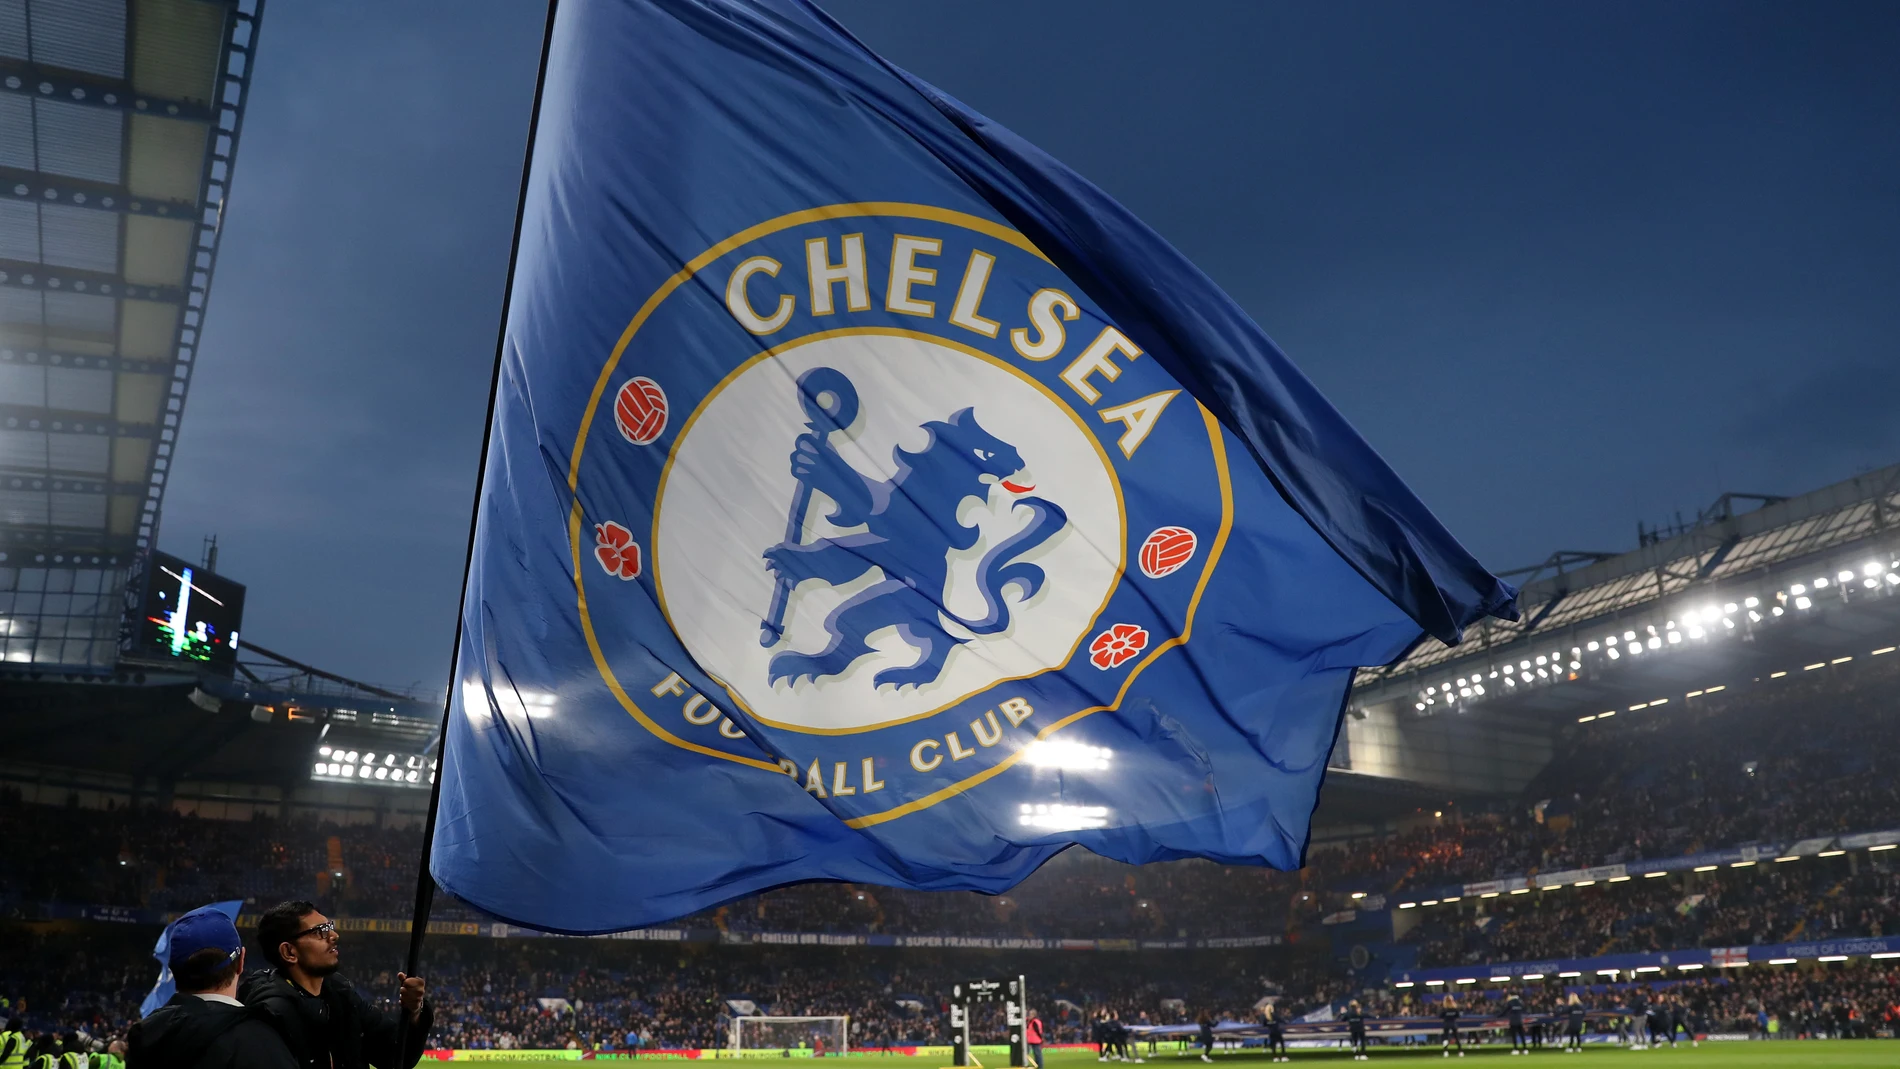 La bandera del Chelsea ondea en Stamford Bridge